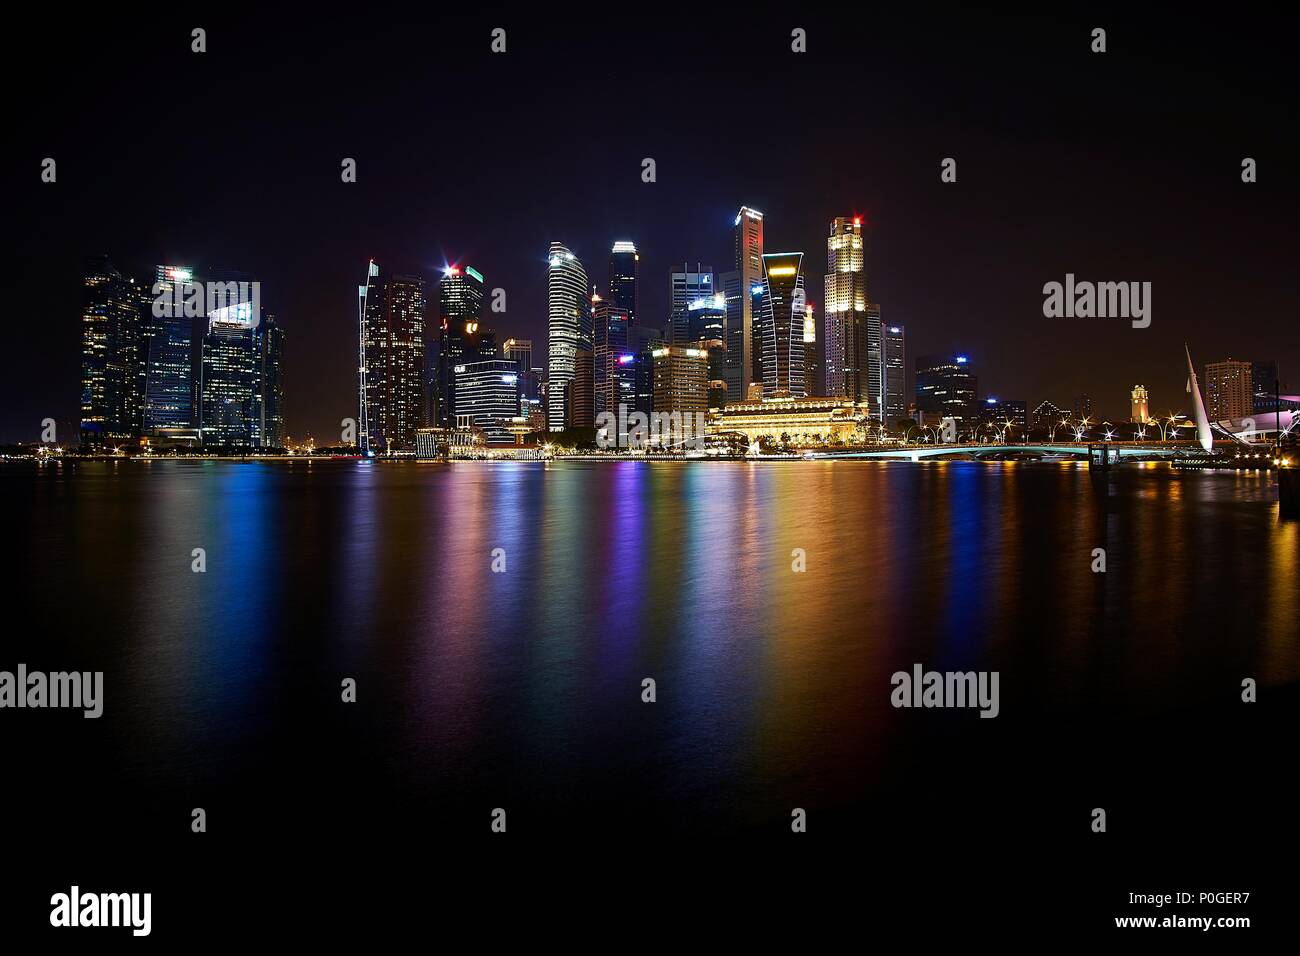 Singapore city skyline at Night Stock Photo